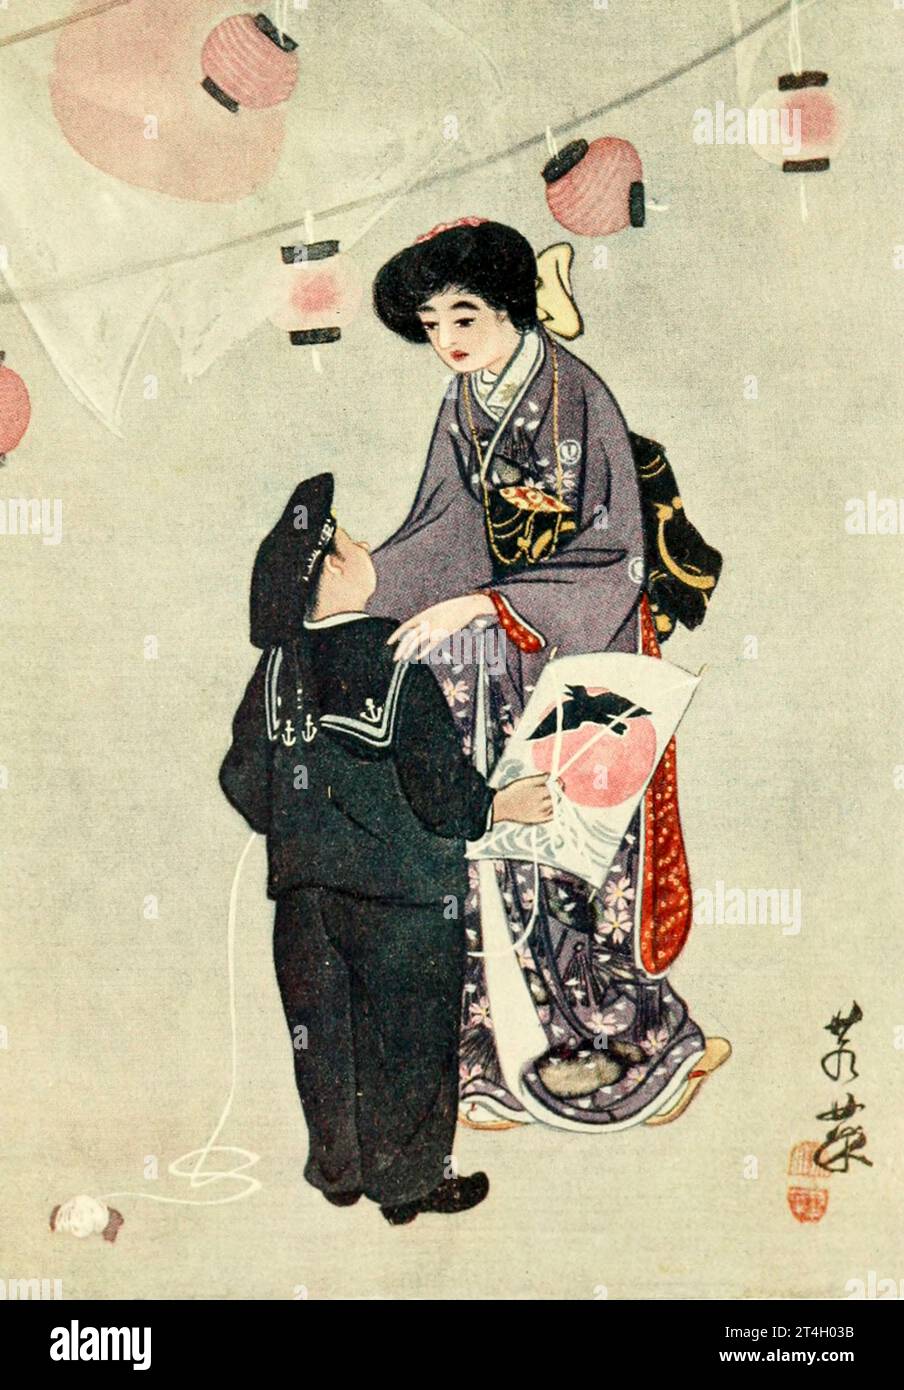 Kimonos japoneses para hombre: artesanía y elegancia en una sola prenda.